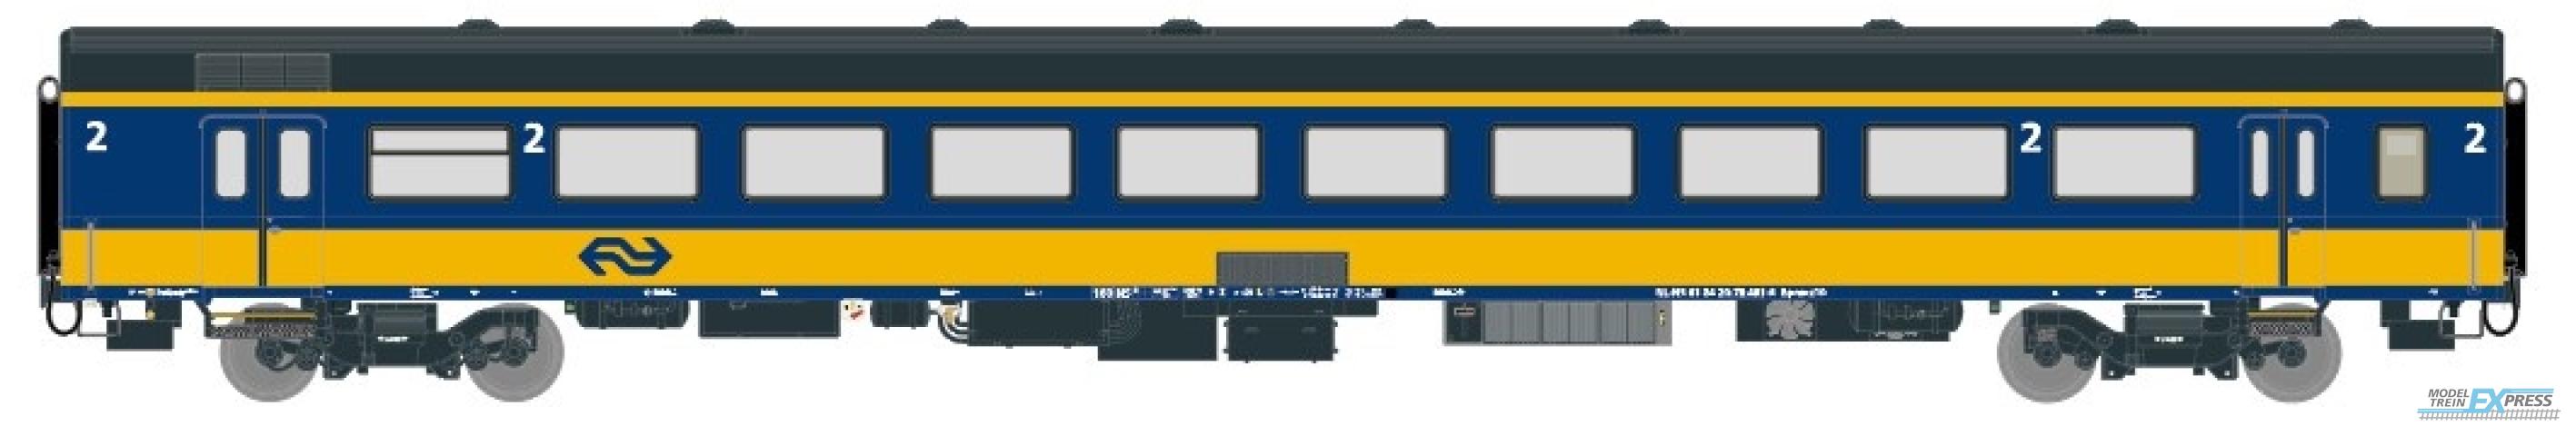 Exact-train 11105 NS ICRm Garnitur 4 Reisezugwagen B (Neue farbe Gelb / Blau), Ep. V